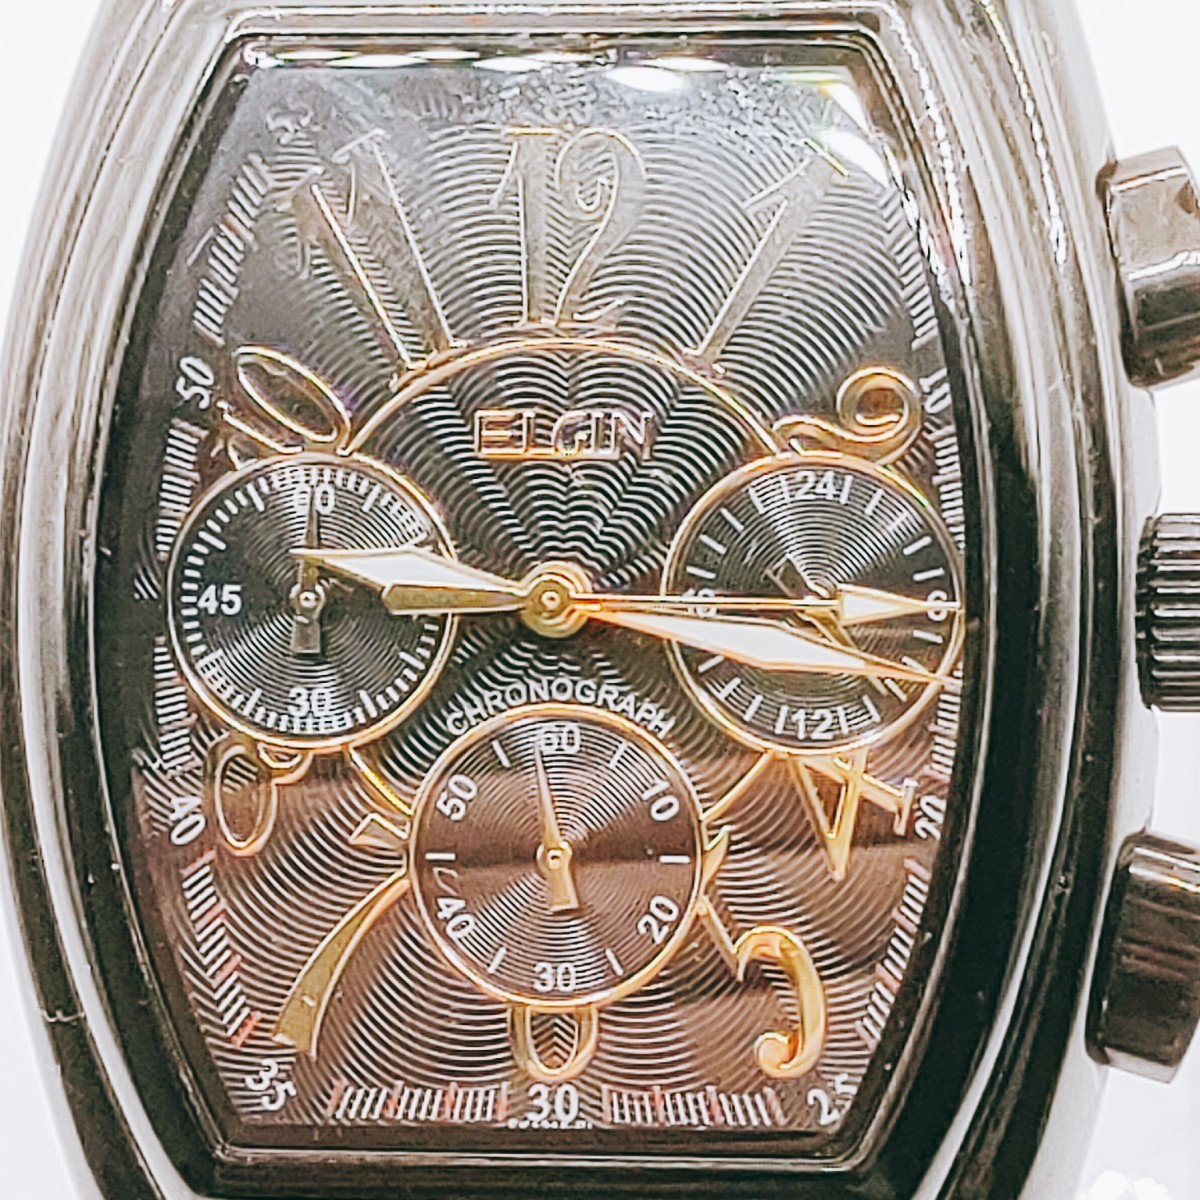 #30 ELGIN エルジン 腕時計 アナログ 3針 黒文字盤 ブラック基調 とけい トケイ アクセ ヴィンテージ アンティーク レトロ ゴージャス_画像2